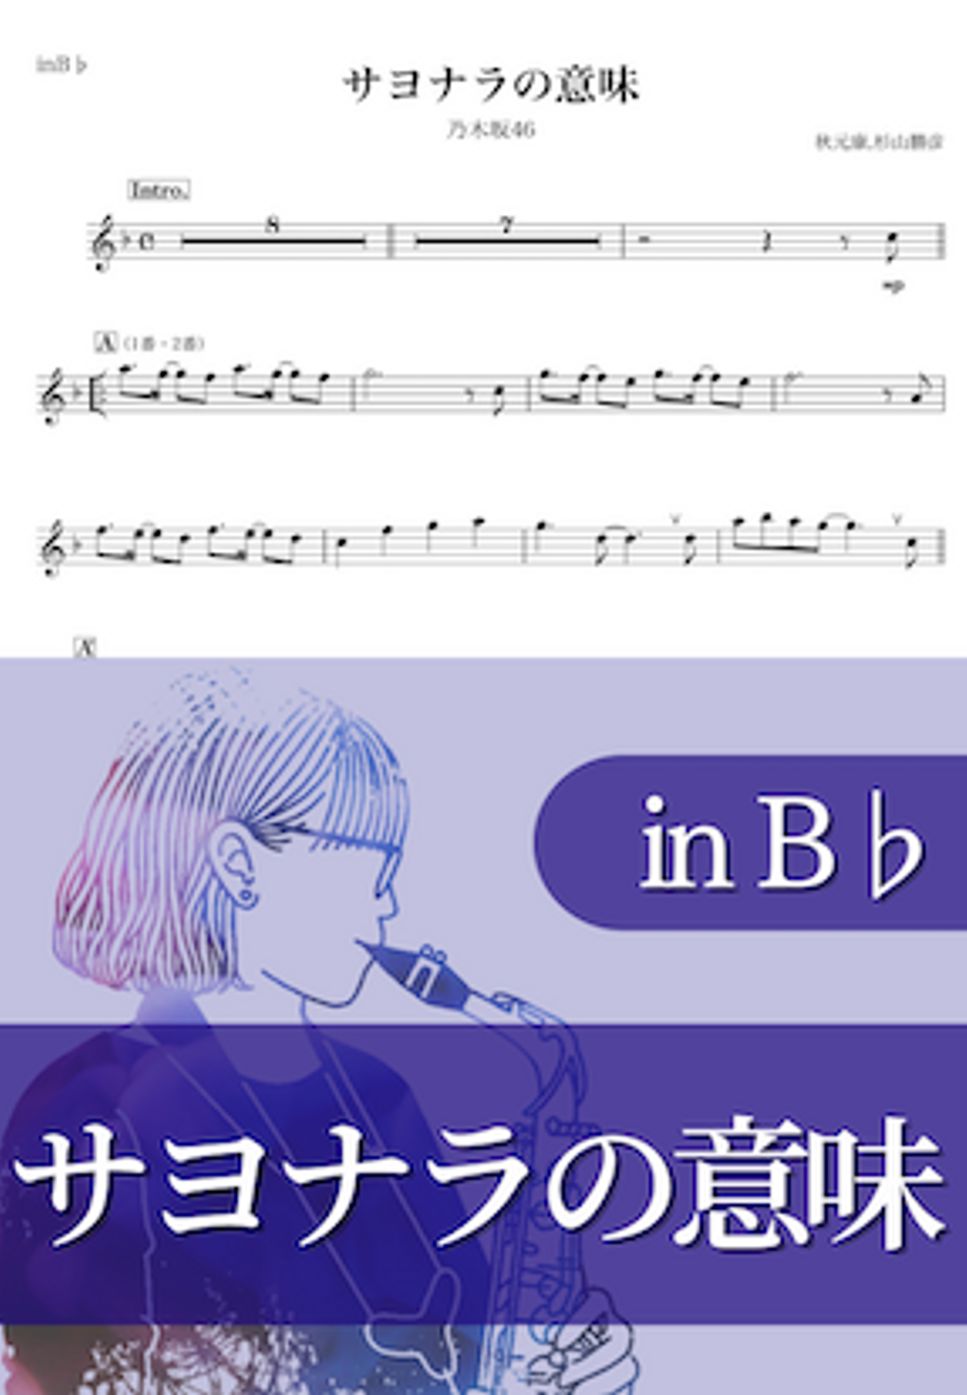 乃木坂46 - サヨナラの意味 (B♭) by kanamusic